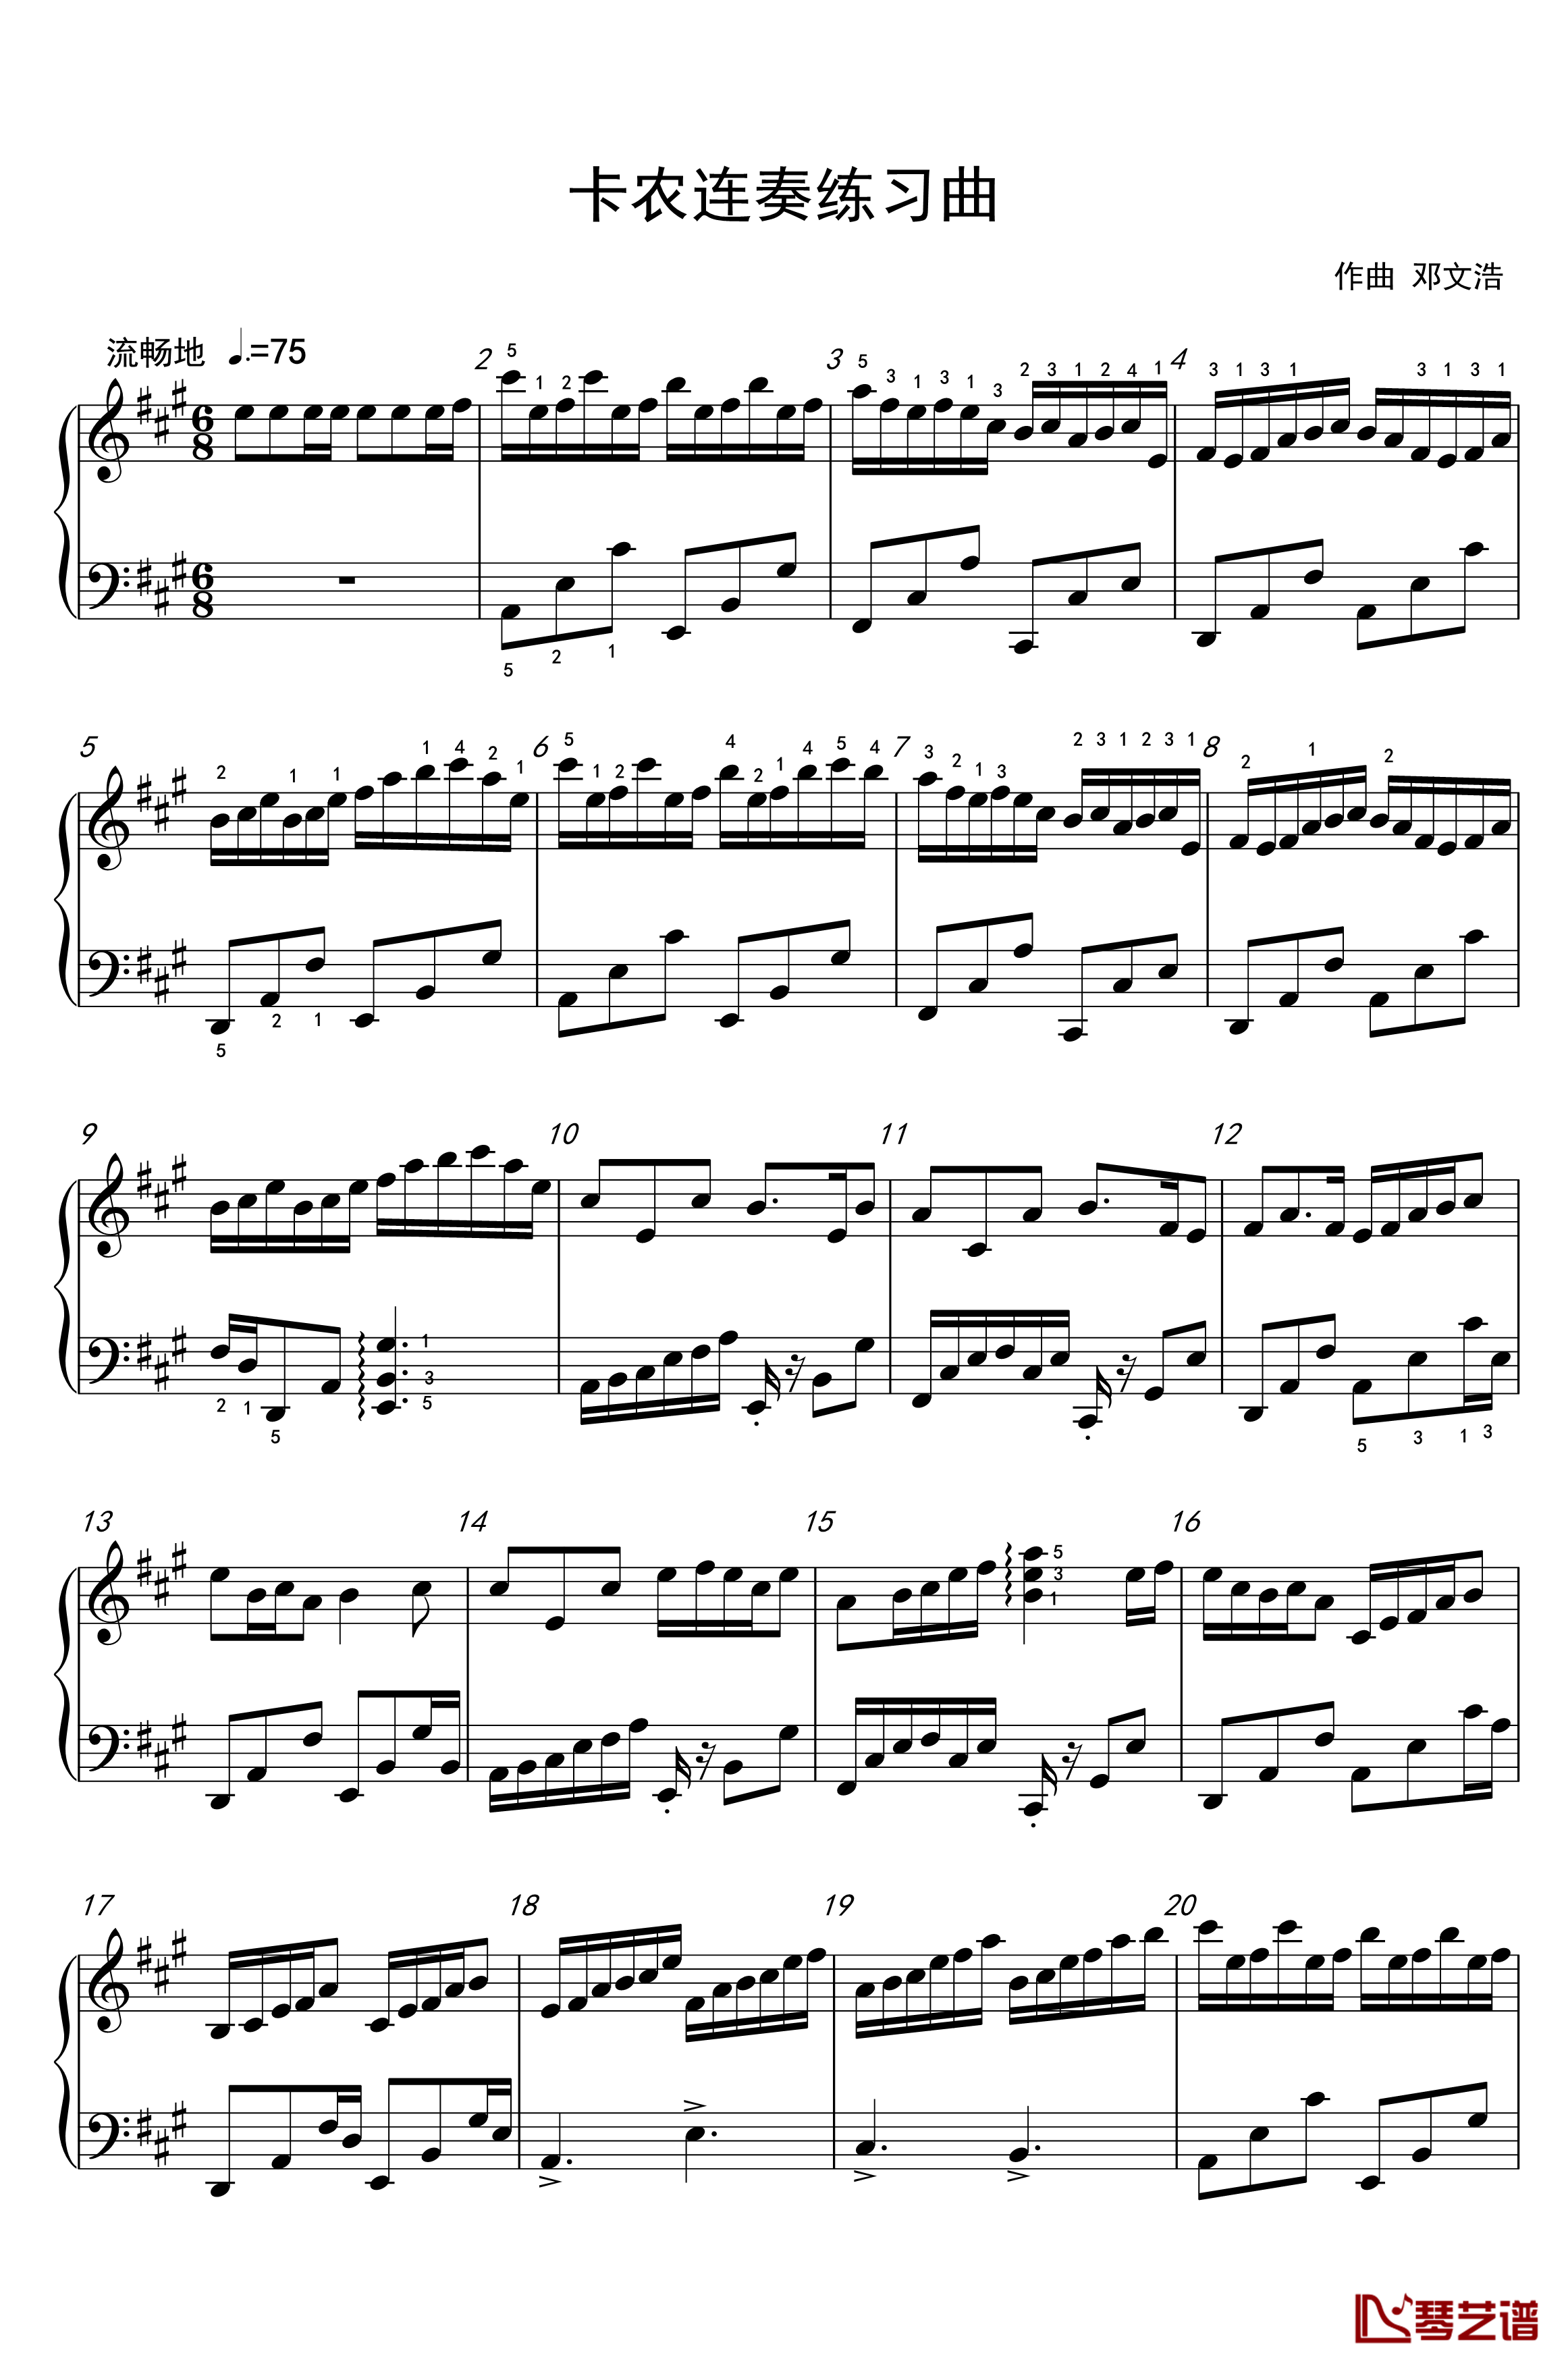 卡农连奏练习曲钢琴谱-xvv123451